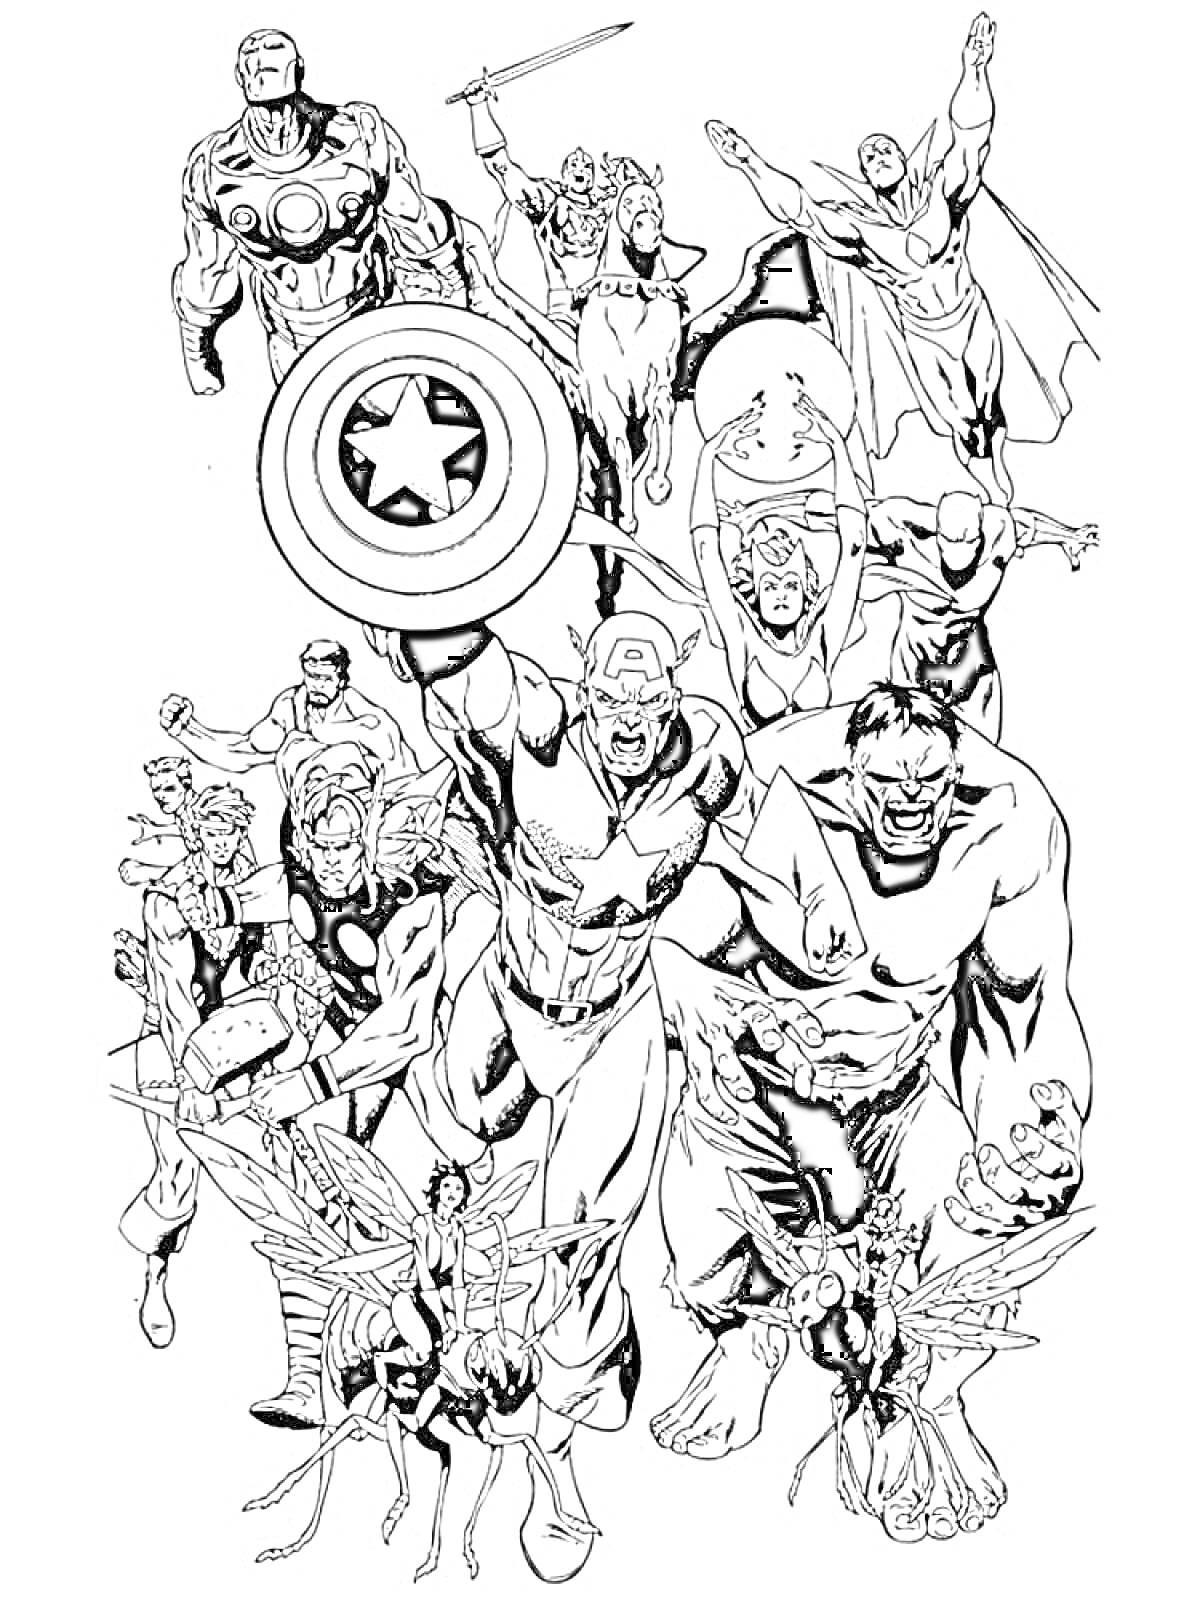 Герои Марвел с Капитаном Америкой, Железным Человеком, Халком, Соколом, Тором, Черной Вдовой, Соколиным Глазом и Человеком-Муравьем